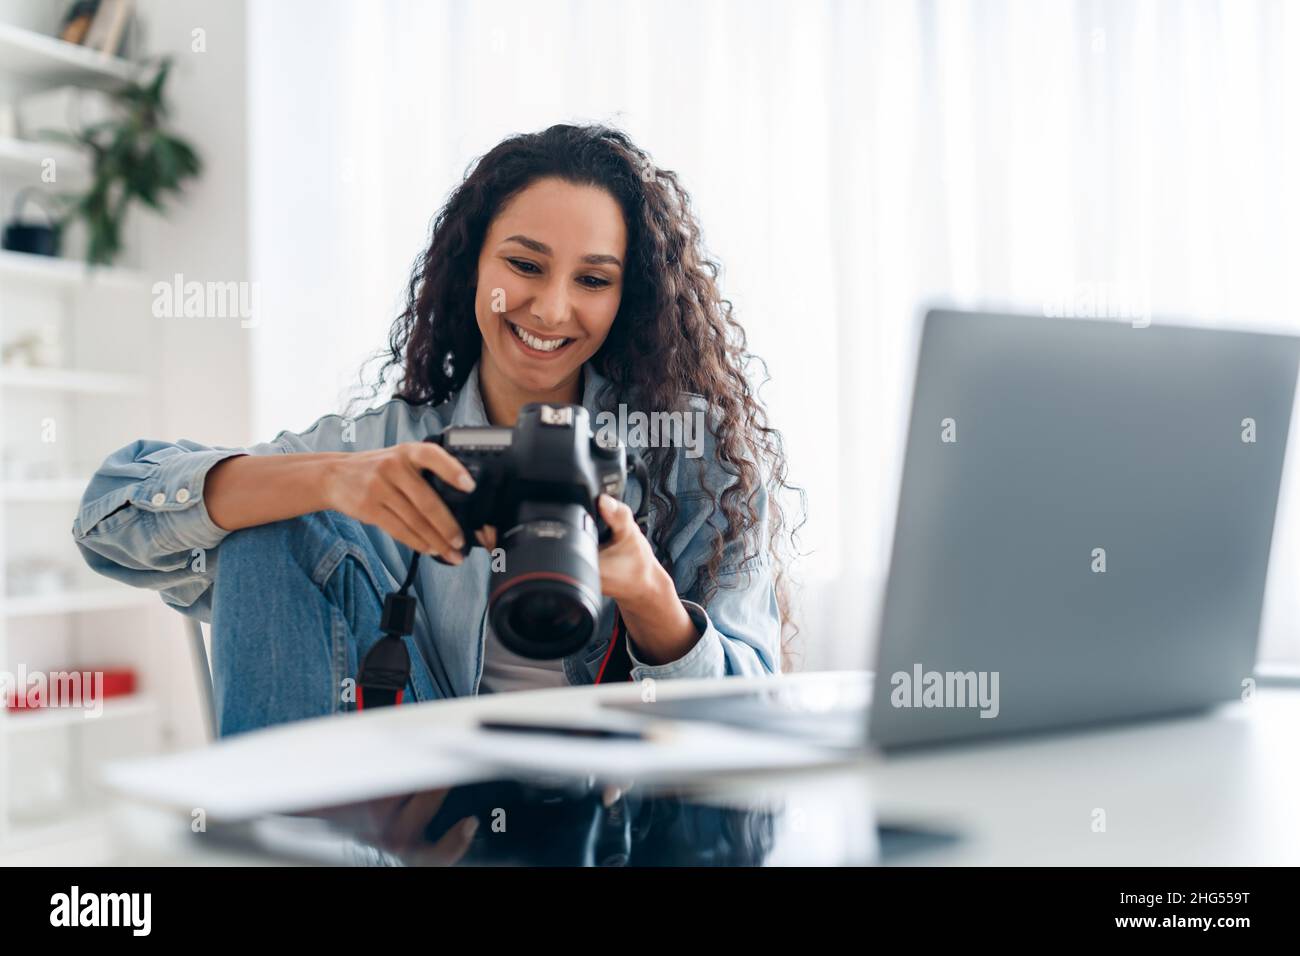 Photographe féminine tenant un appareil photo regardant des photos à l'intérieur d'un ordinateur portable Banque D'Images